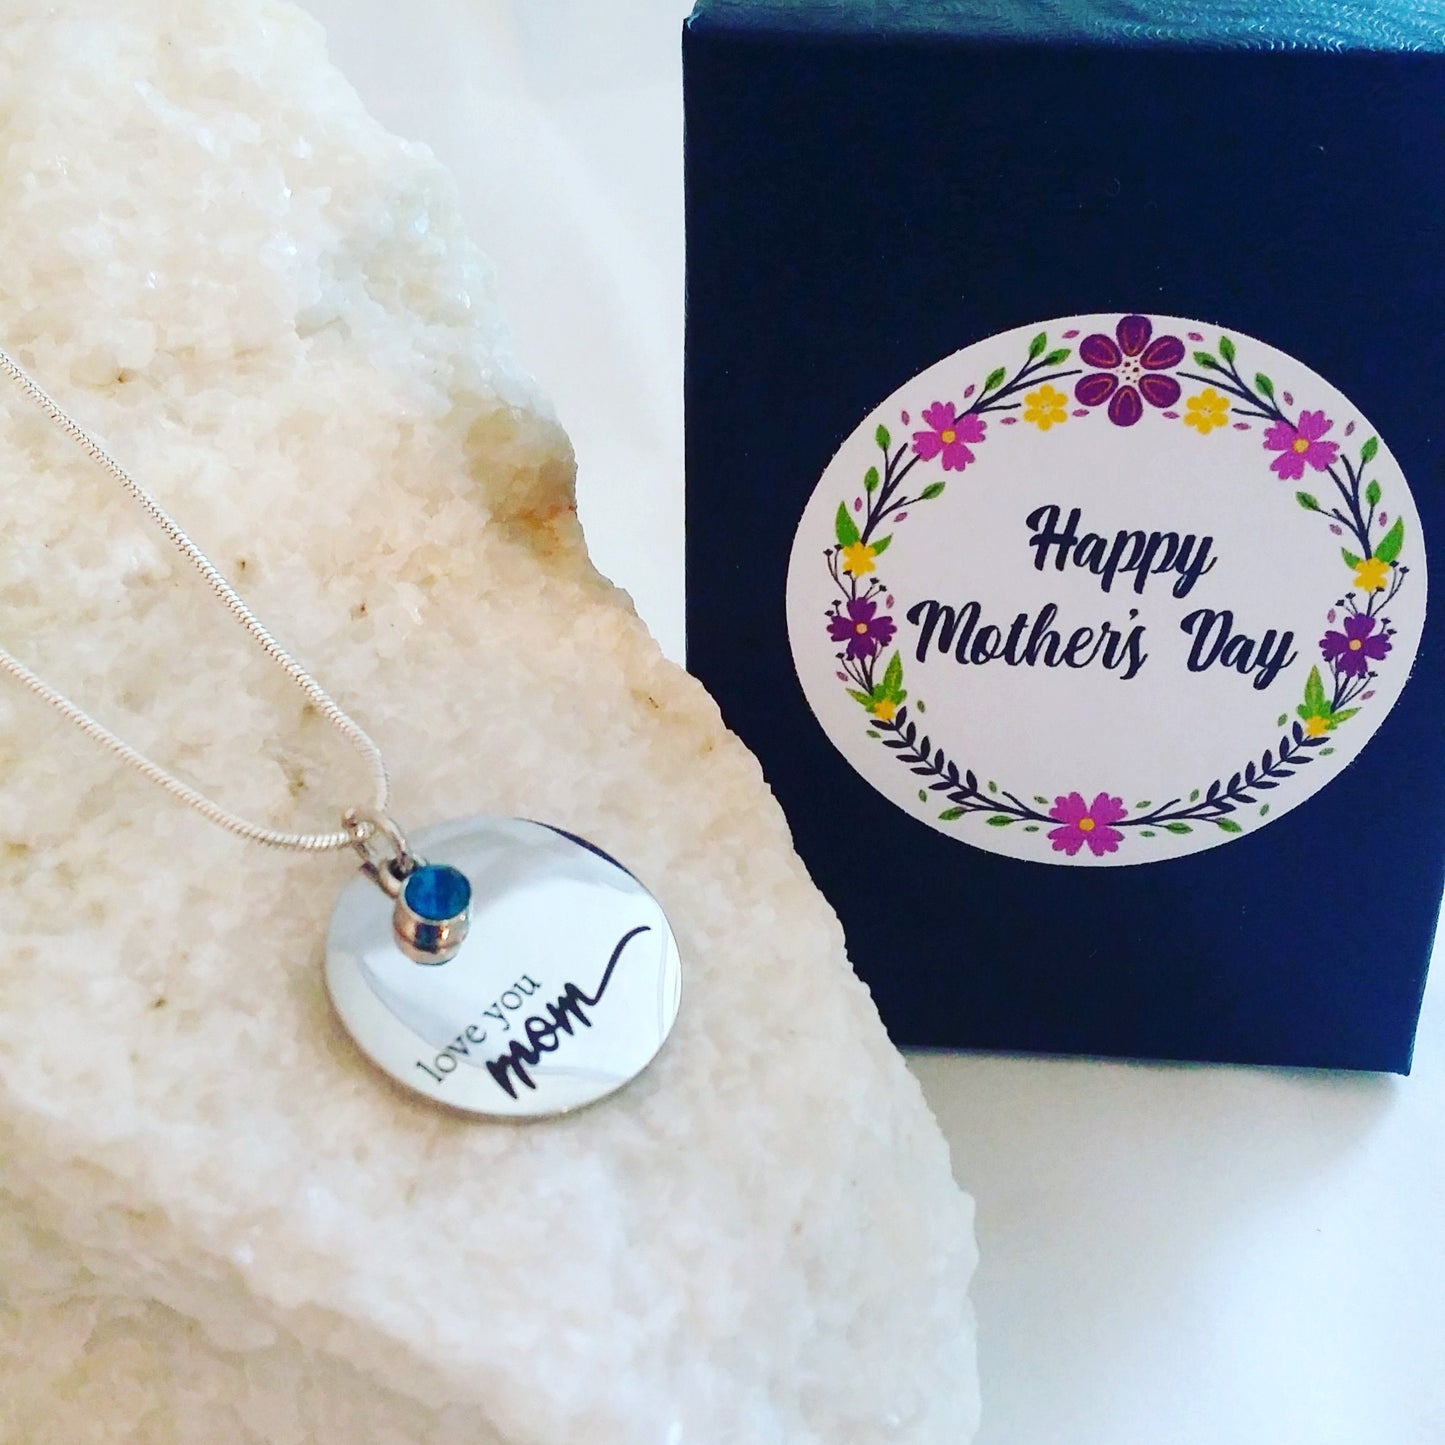 Te amo collar MOM, regalo del día de las madres, colgante CÍRCULO de plata grabado, collar BIRTHSTONE, regalo de amor para mamá, joyería personalizada / MyWhys